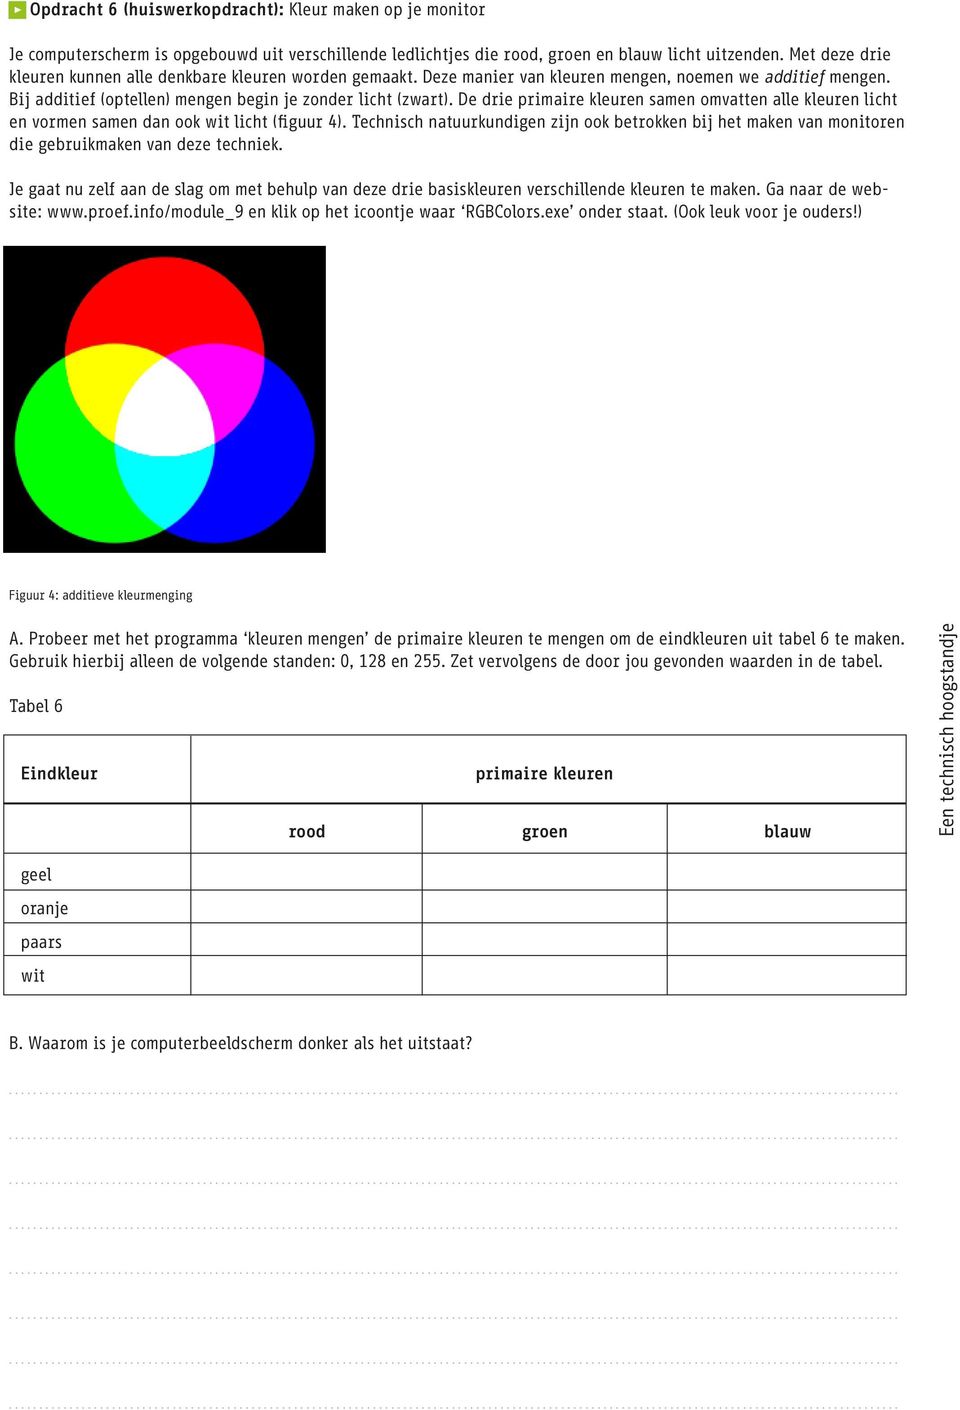 De drie primaire kleuren samen omvatten alle kleuren licht en vormen samen dan ook wit licht (figuur 4).